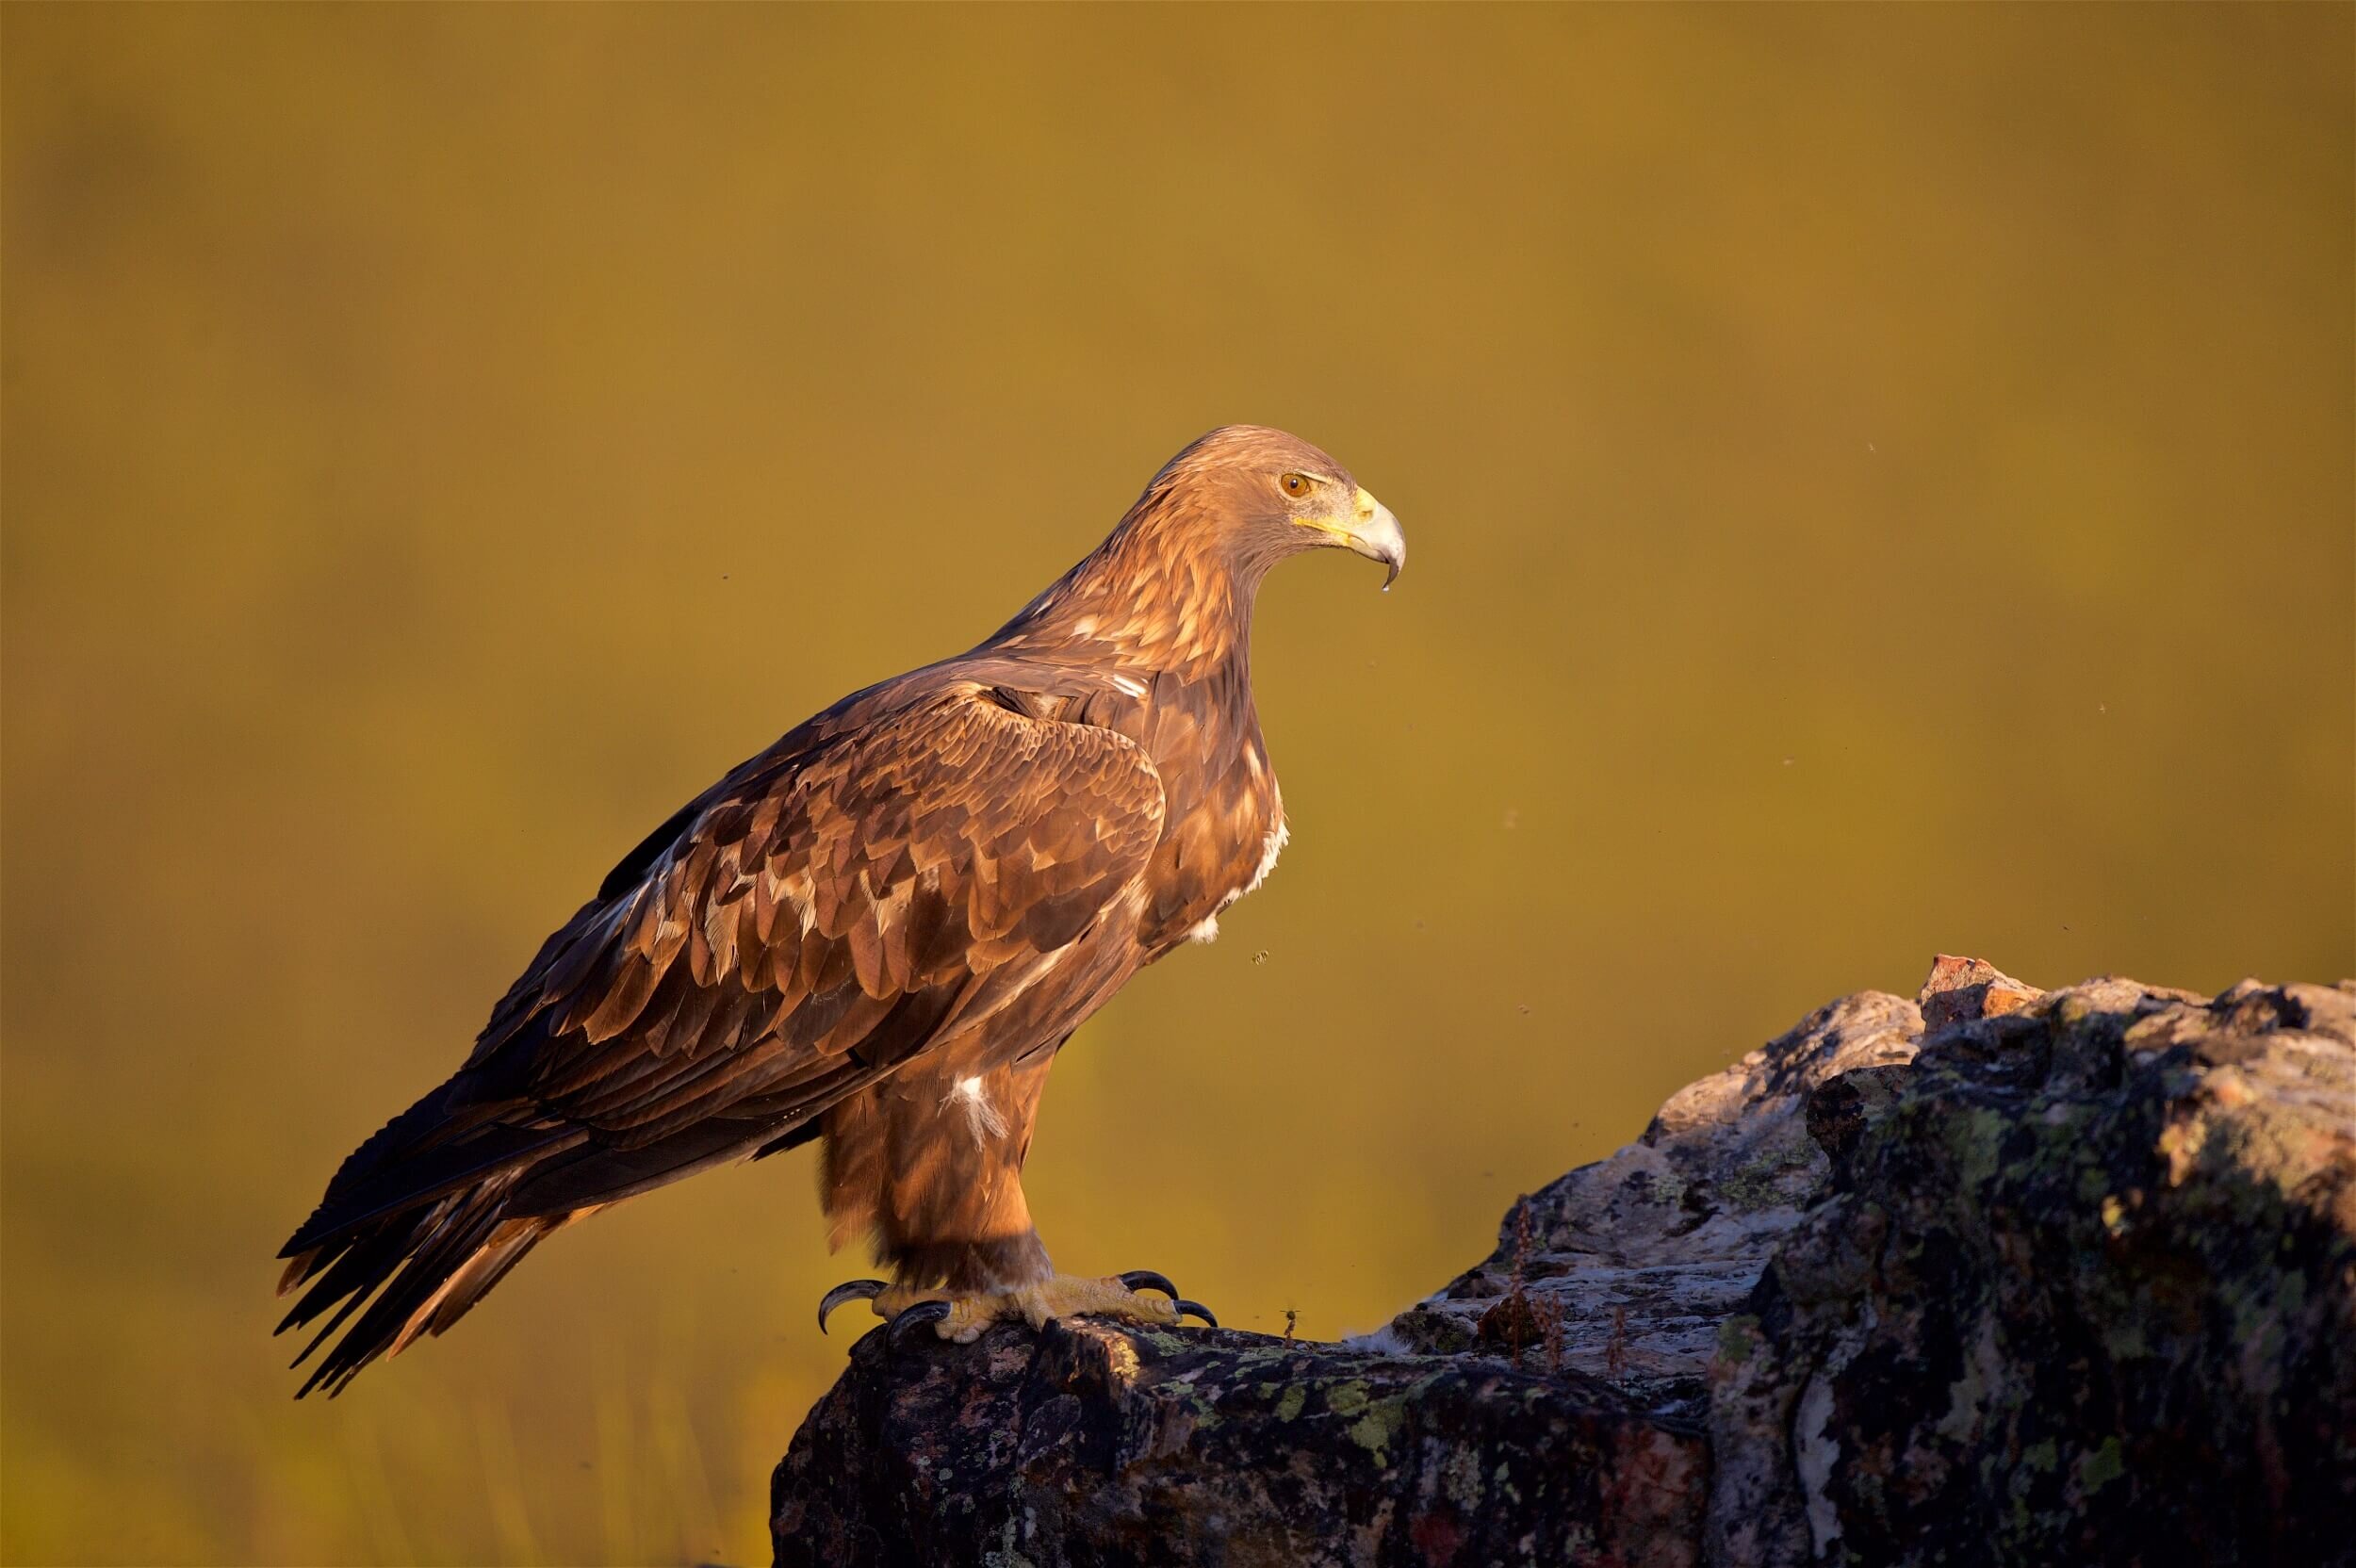  La siempre imponente figura de un águila real adulta ( Aquila chrysaetos ), con las primeras luces del amanecer.  Sierra de San Pedro.  